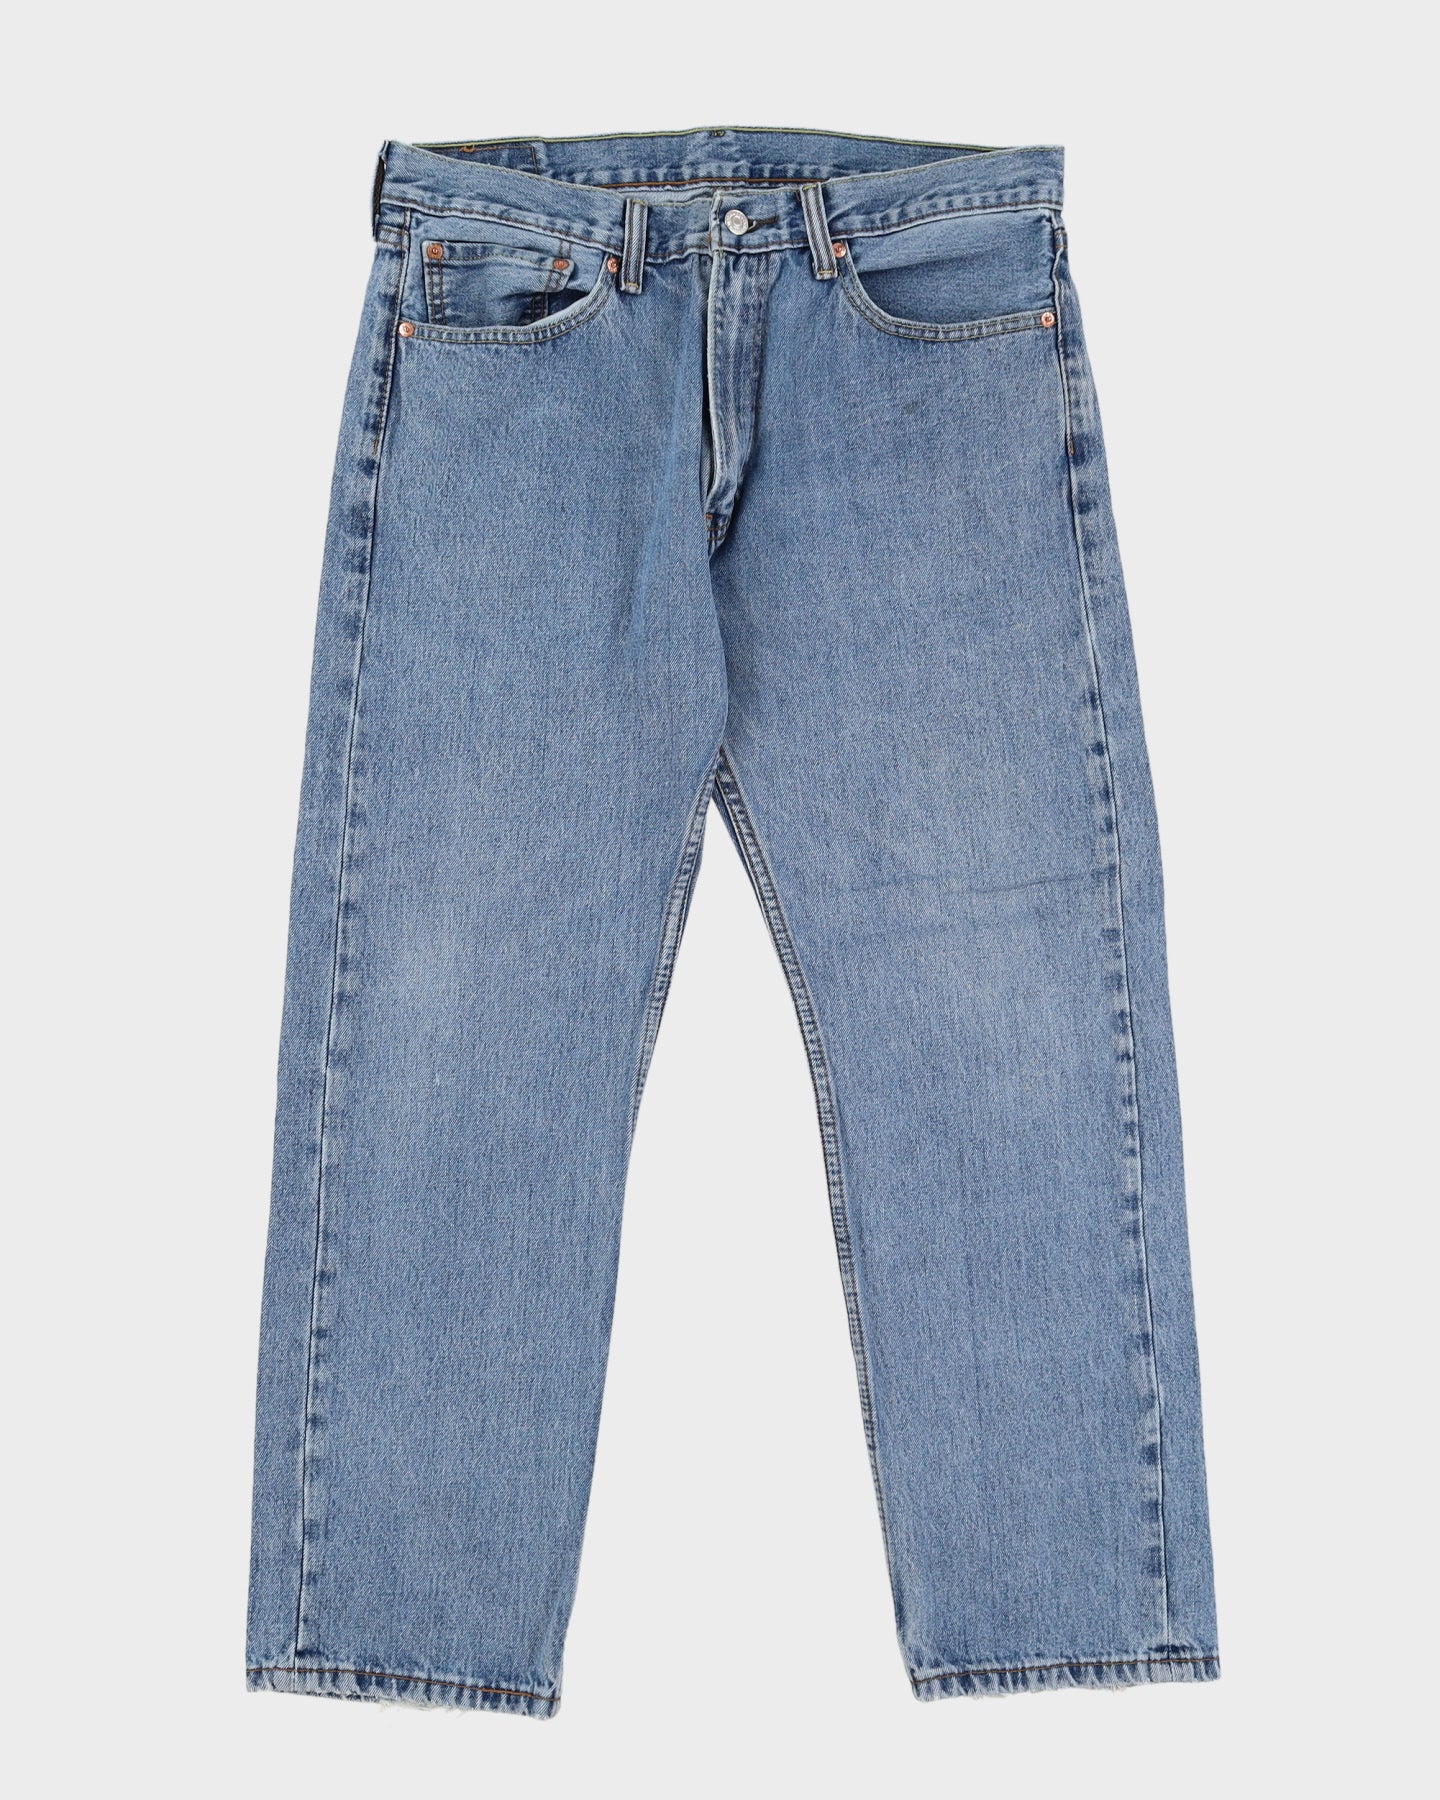 Levi's 505 Blue Jeans - W34 L28